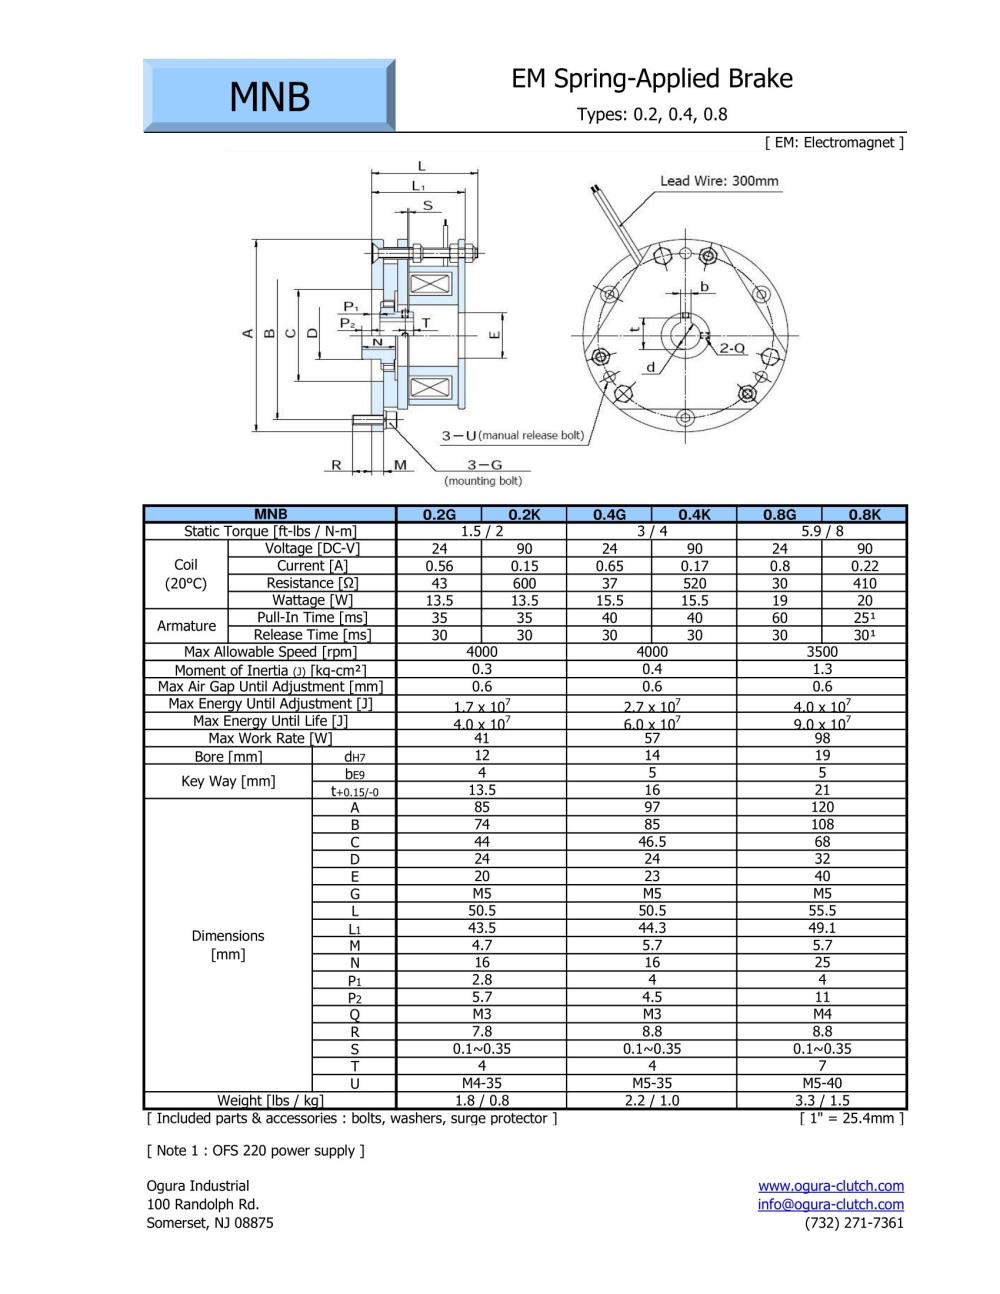 OGURA Electromagnetic Spring Applied Brake MNB 0.2G-N, 0.4G-N, 0.8G-N Series